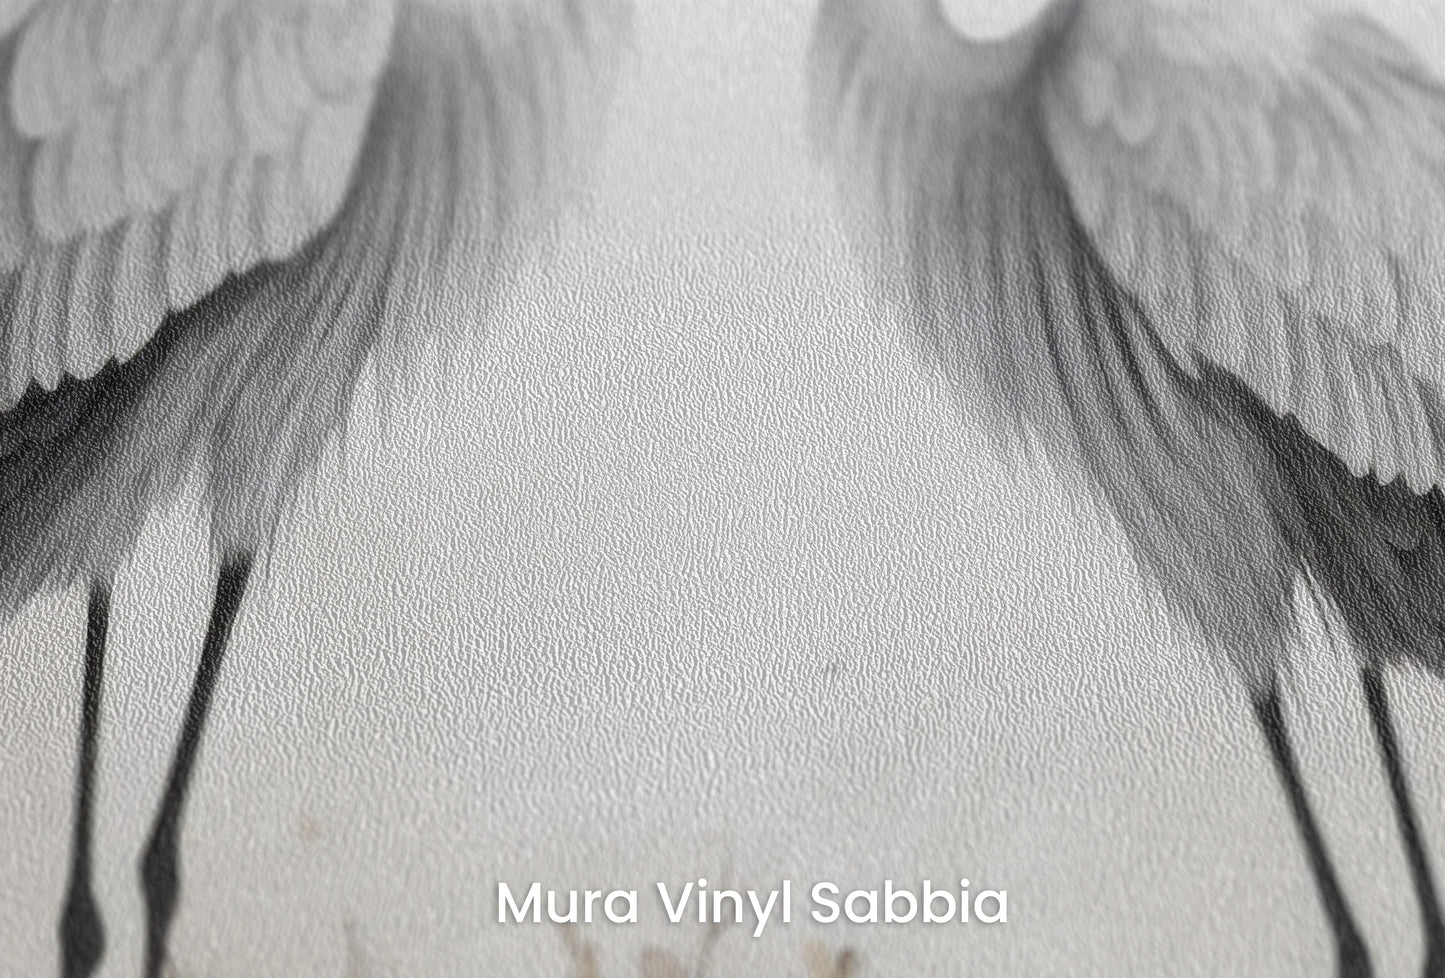 Zbliżenie na artystyczną fototapetę o nazwie Eternal Bond na podłożu Mura Vinyl Sabbia struktura grubego ziarna piasku.